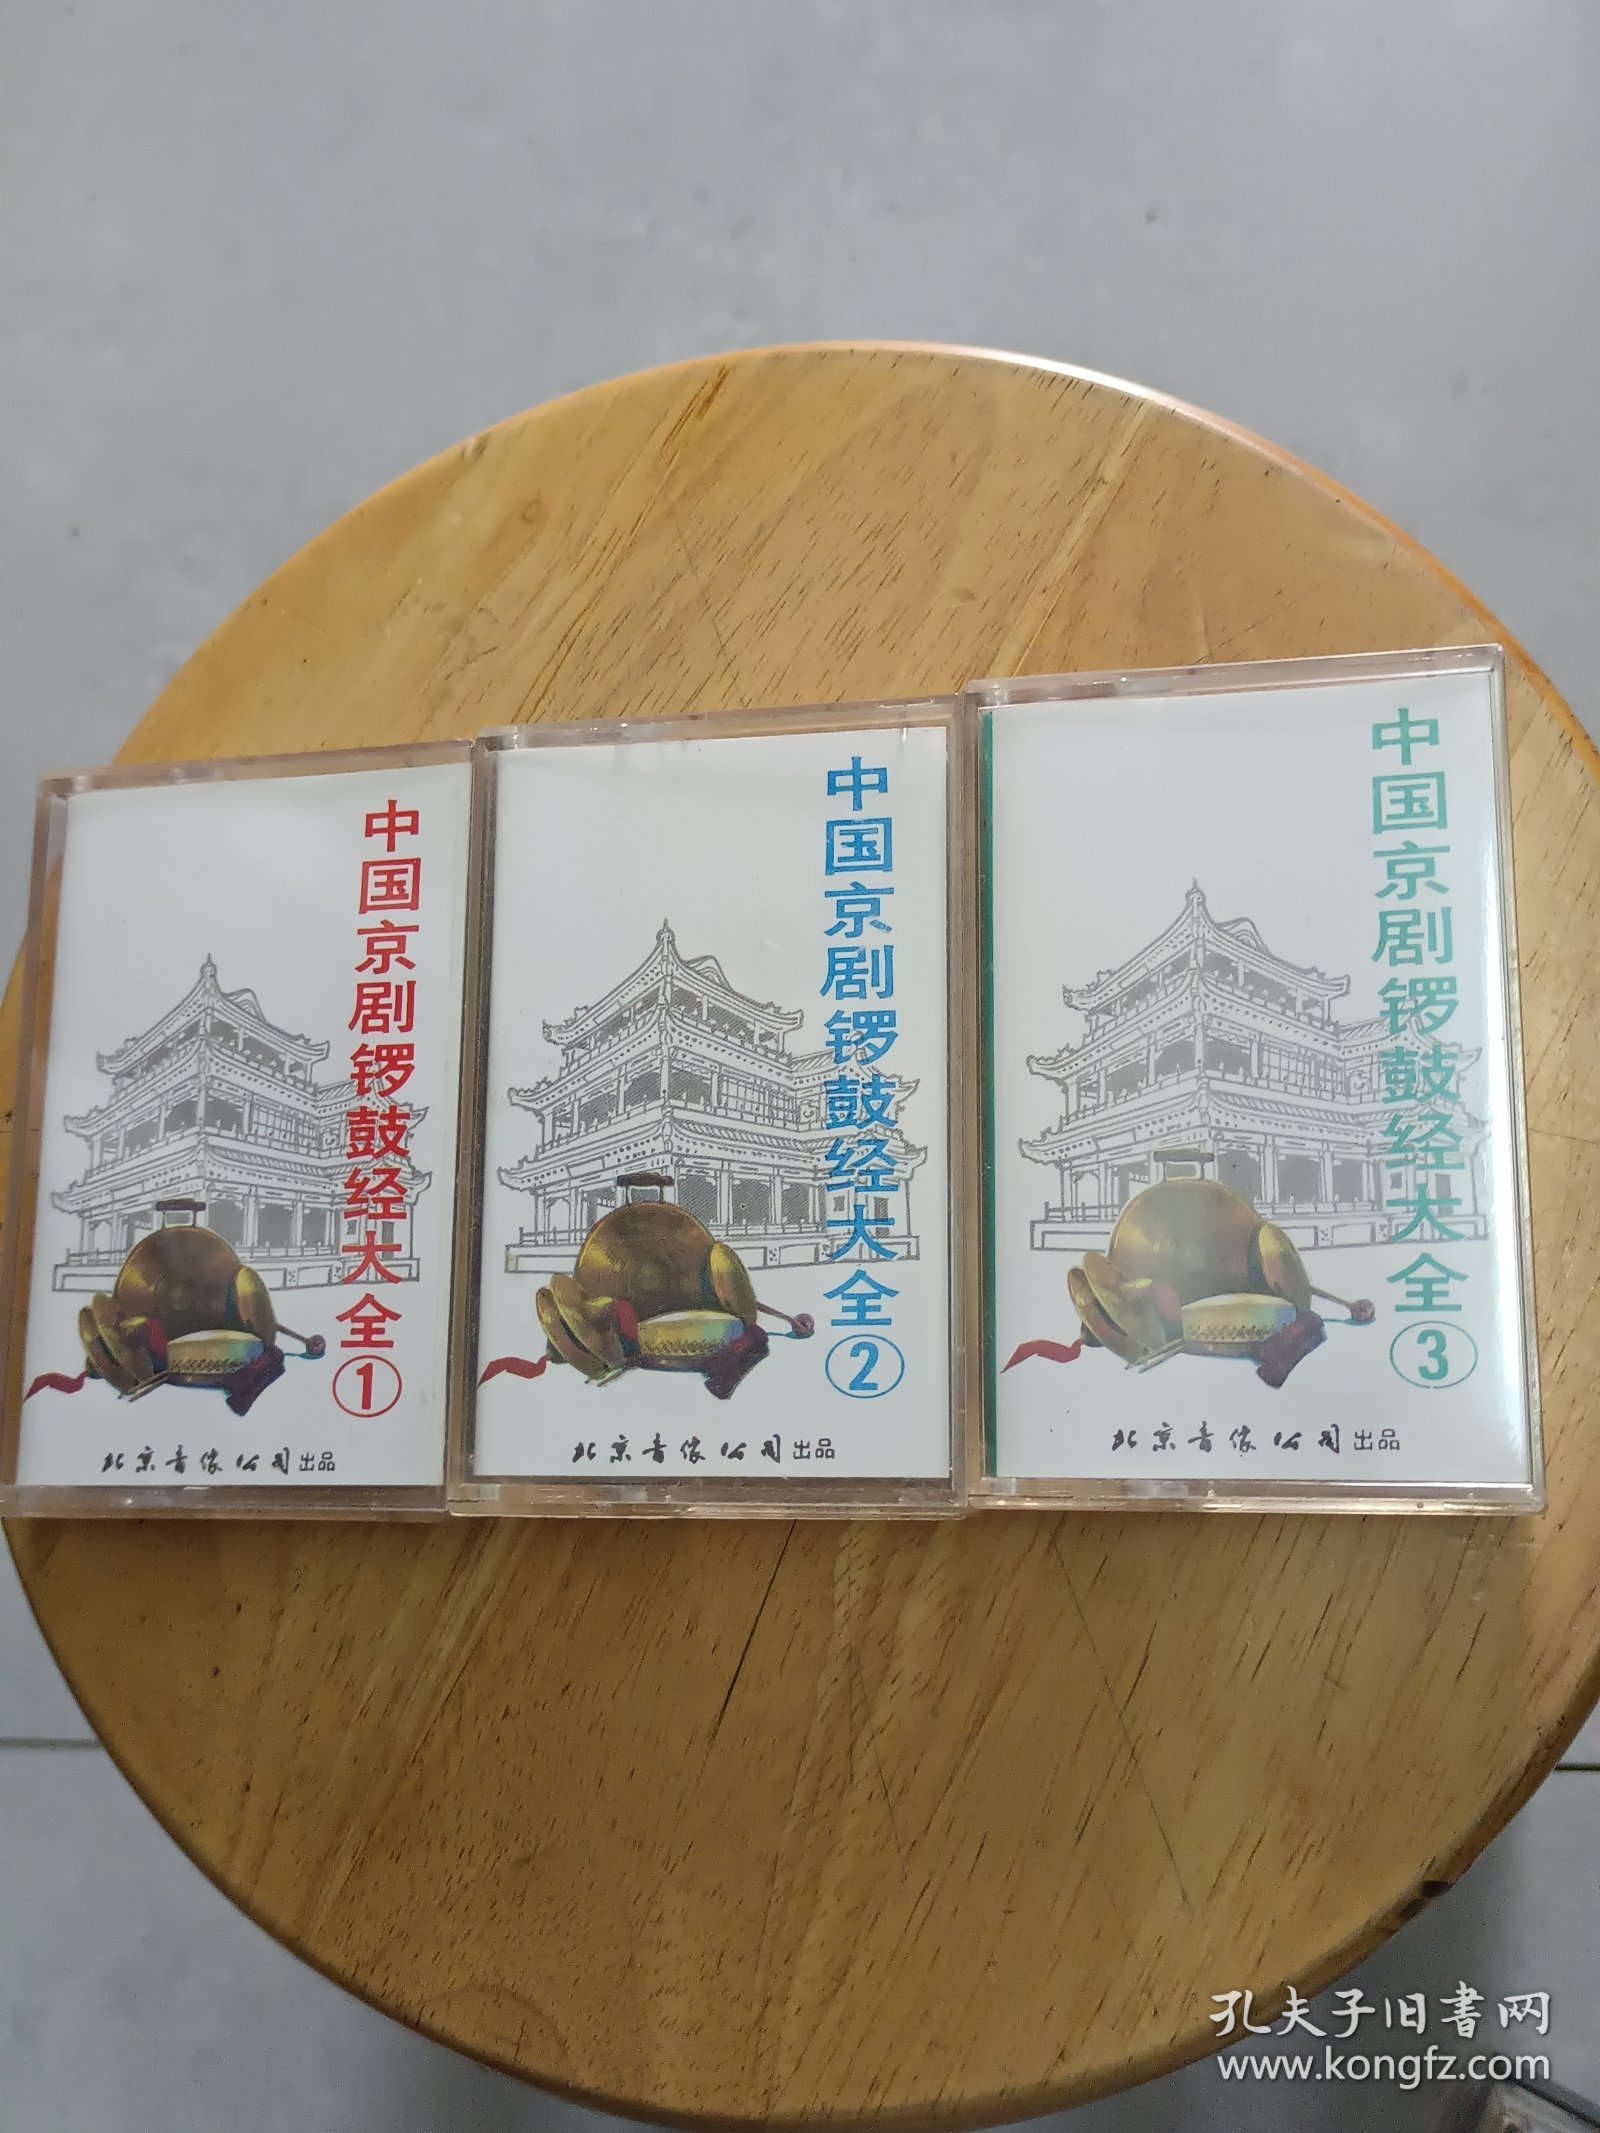 【磁带】《中国京剧锣鼓经大全》1、2、3碟合售，与实拍-致